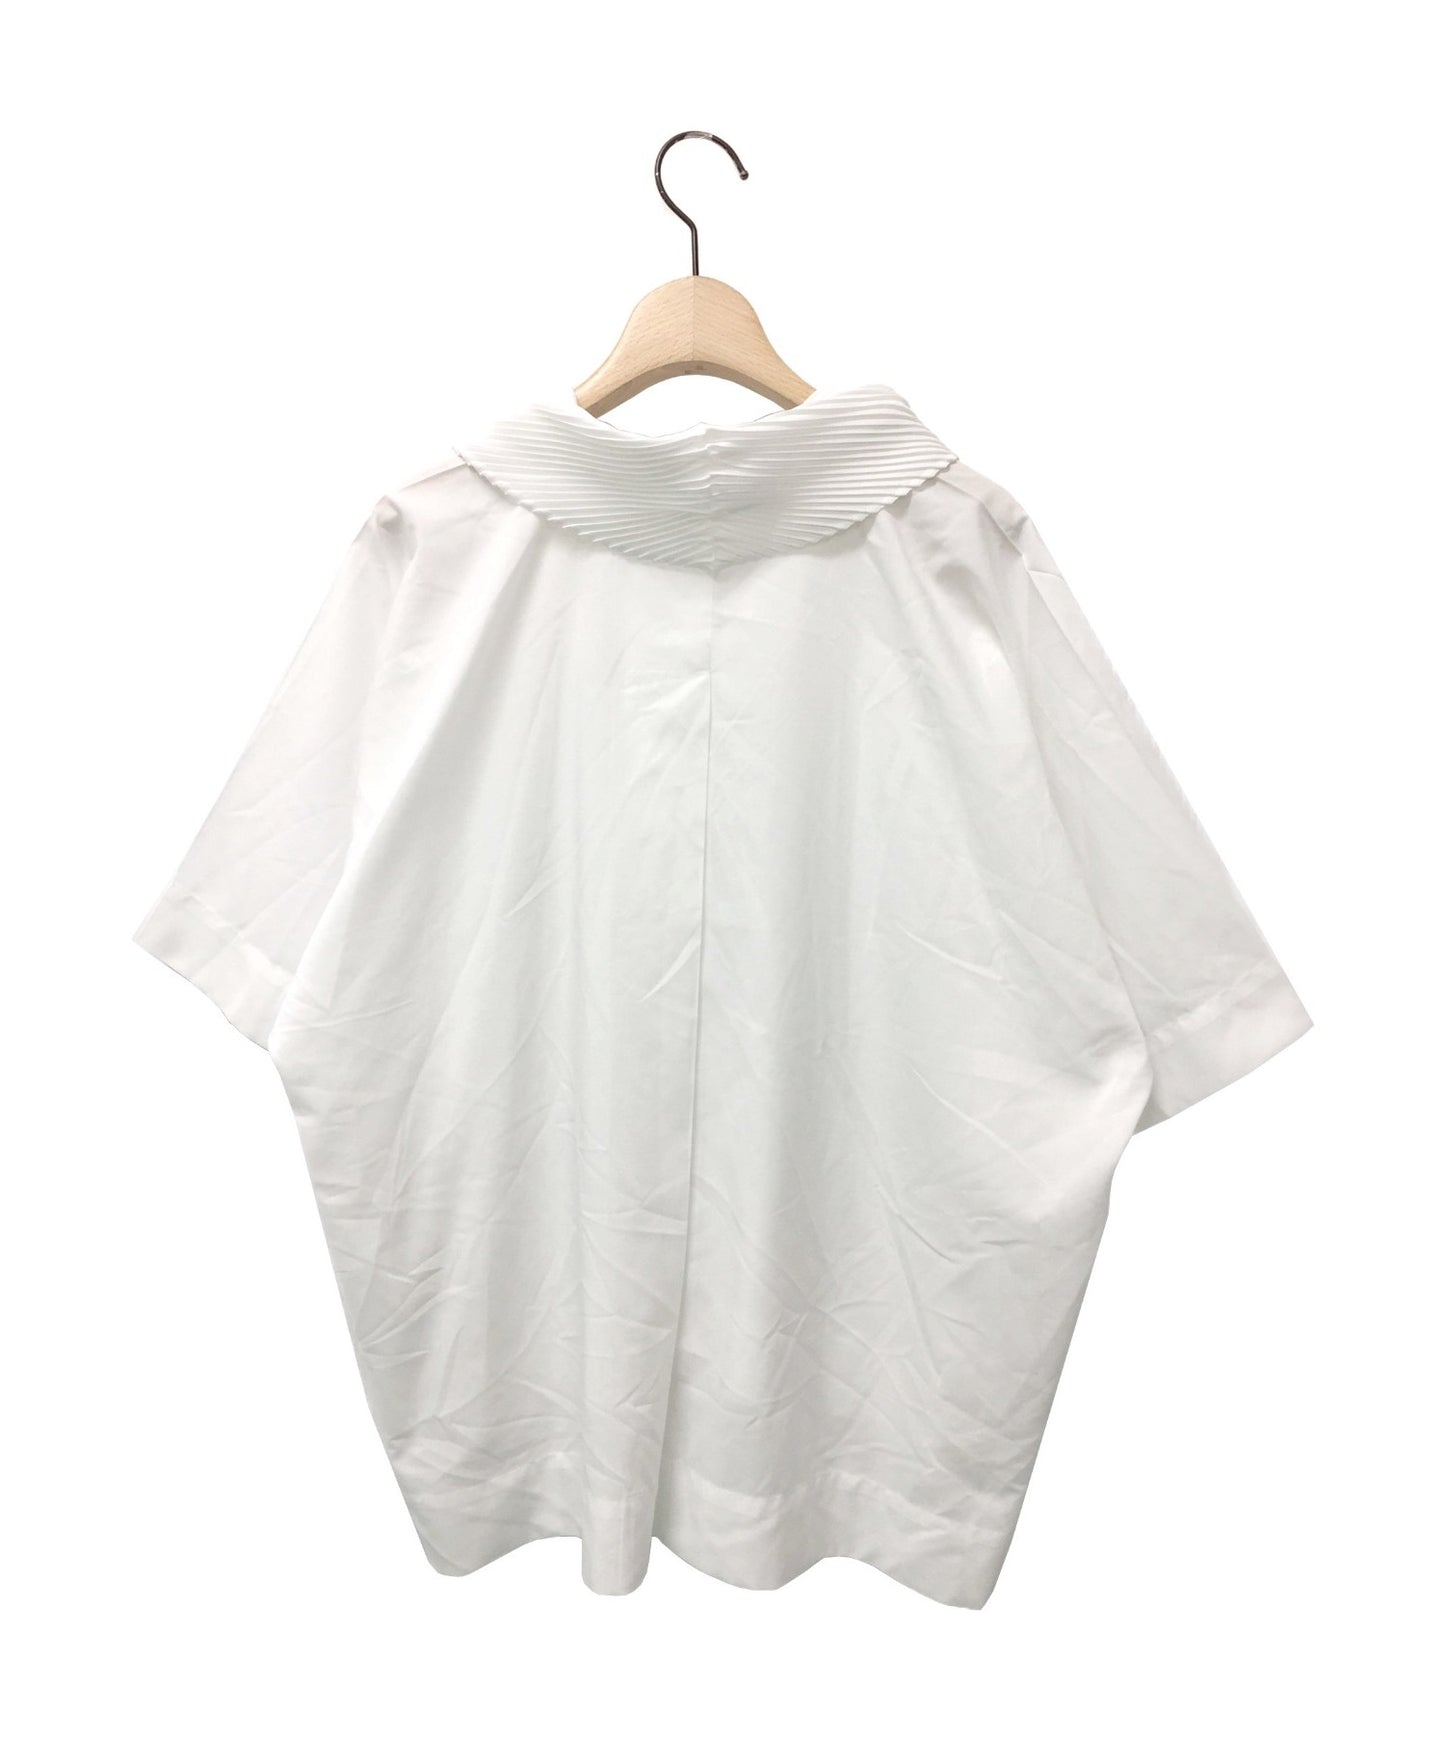 Issey Miyake 칼라 주름 풀 오버 셔츠 / 짧은 슬리브 셔츠